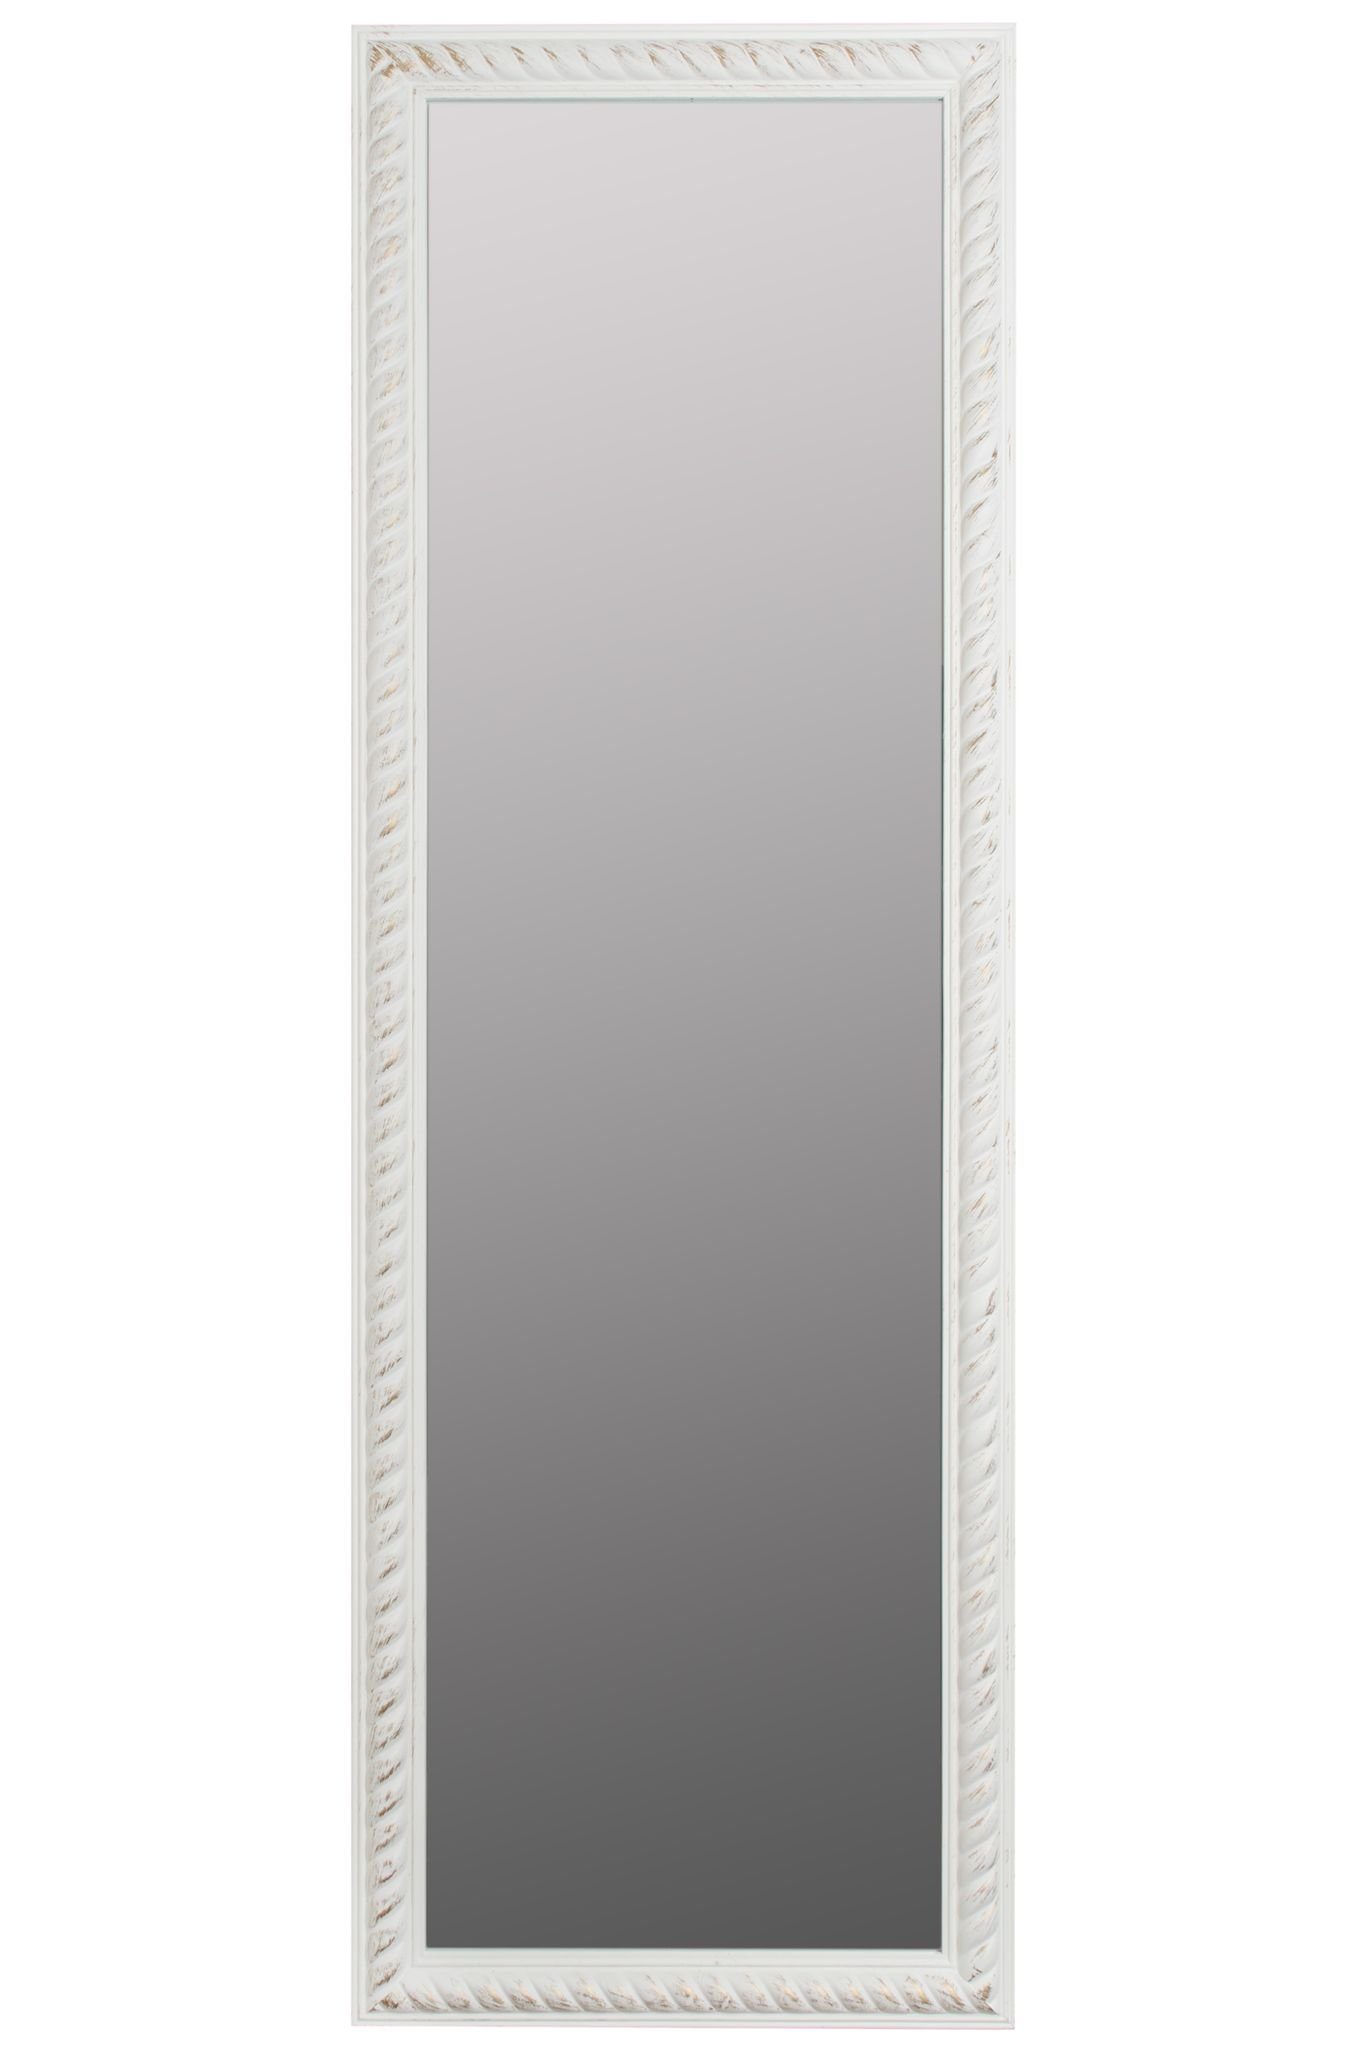 elbmöbel Wandspiegel »Wandspiegel Spiegel Badezimmerspiegel«, Wandspiegel:  Kordelrahmen 62x187x7 cm holz weiß vintage